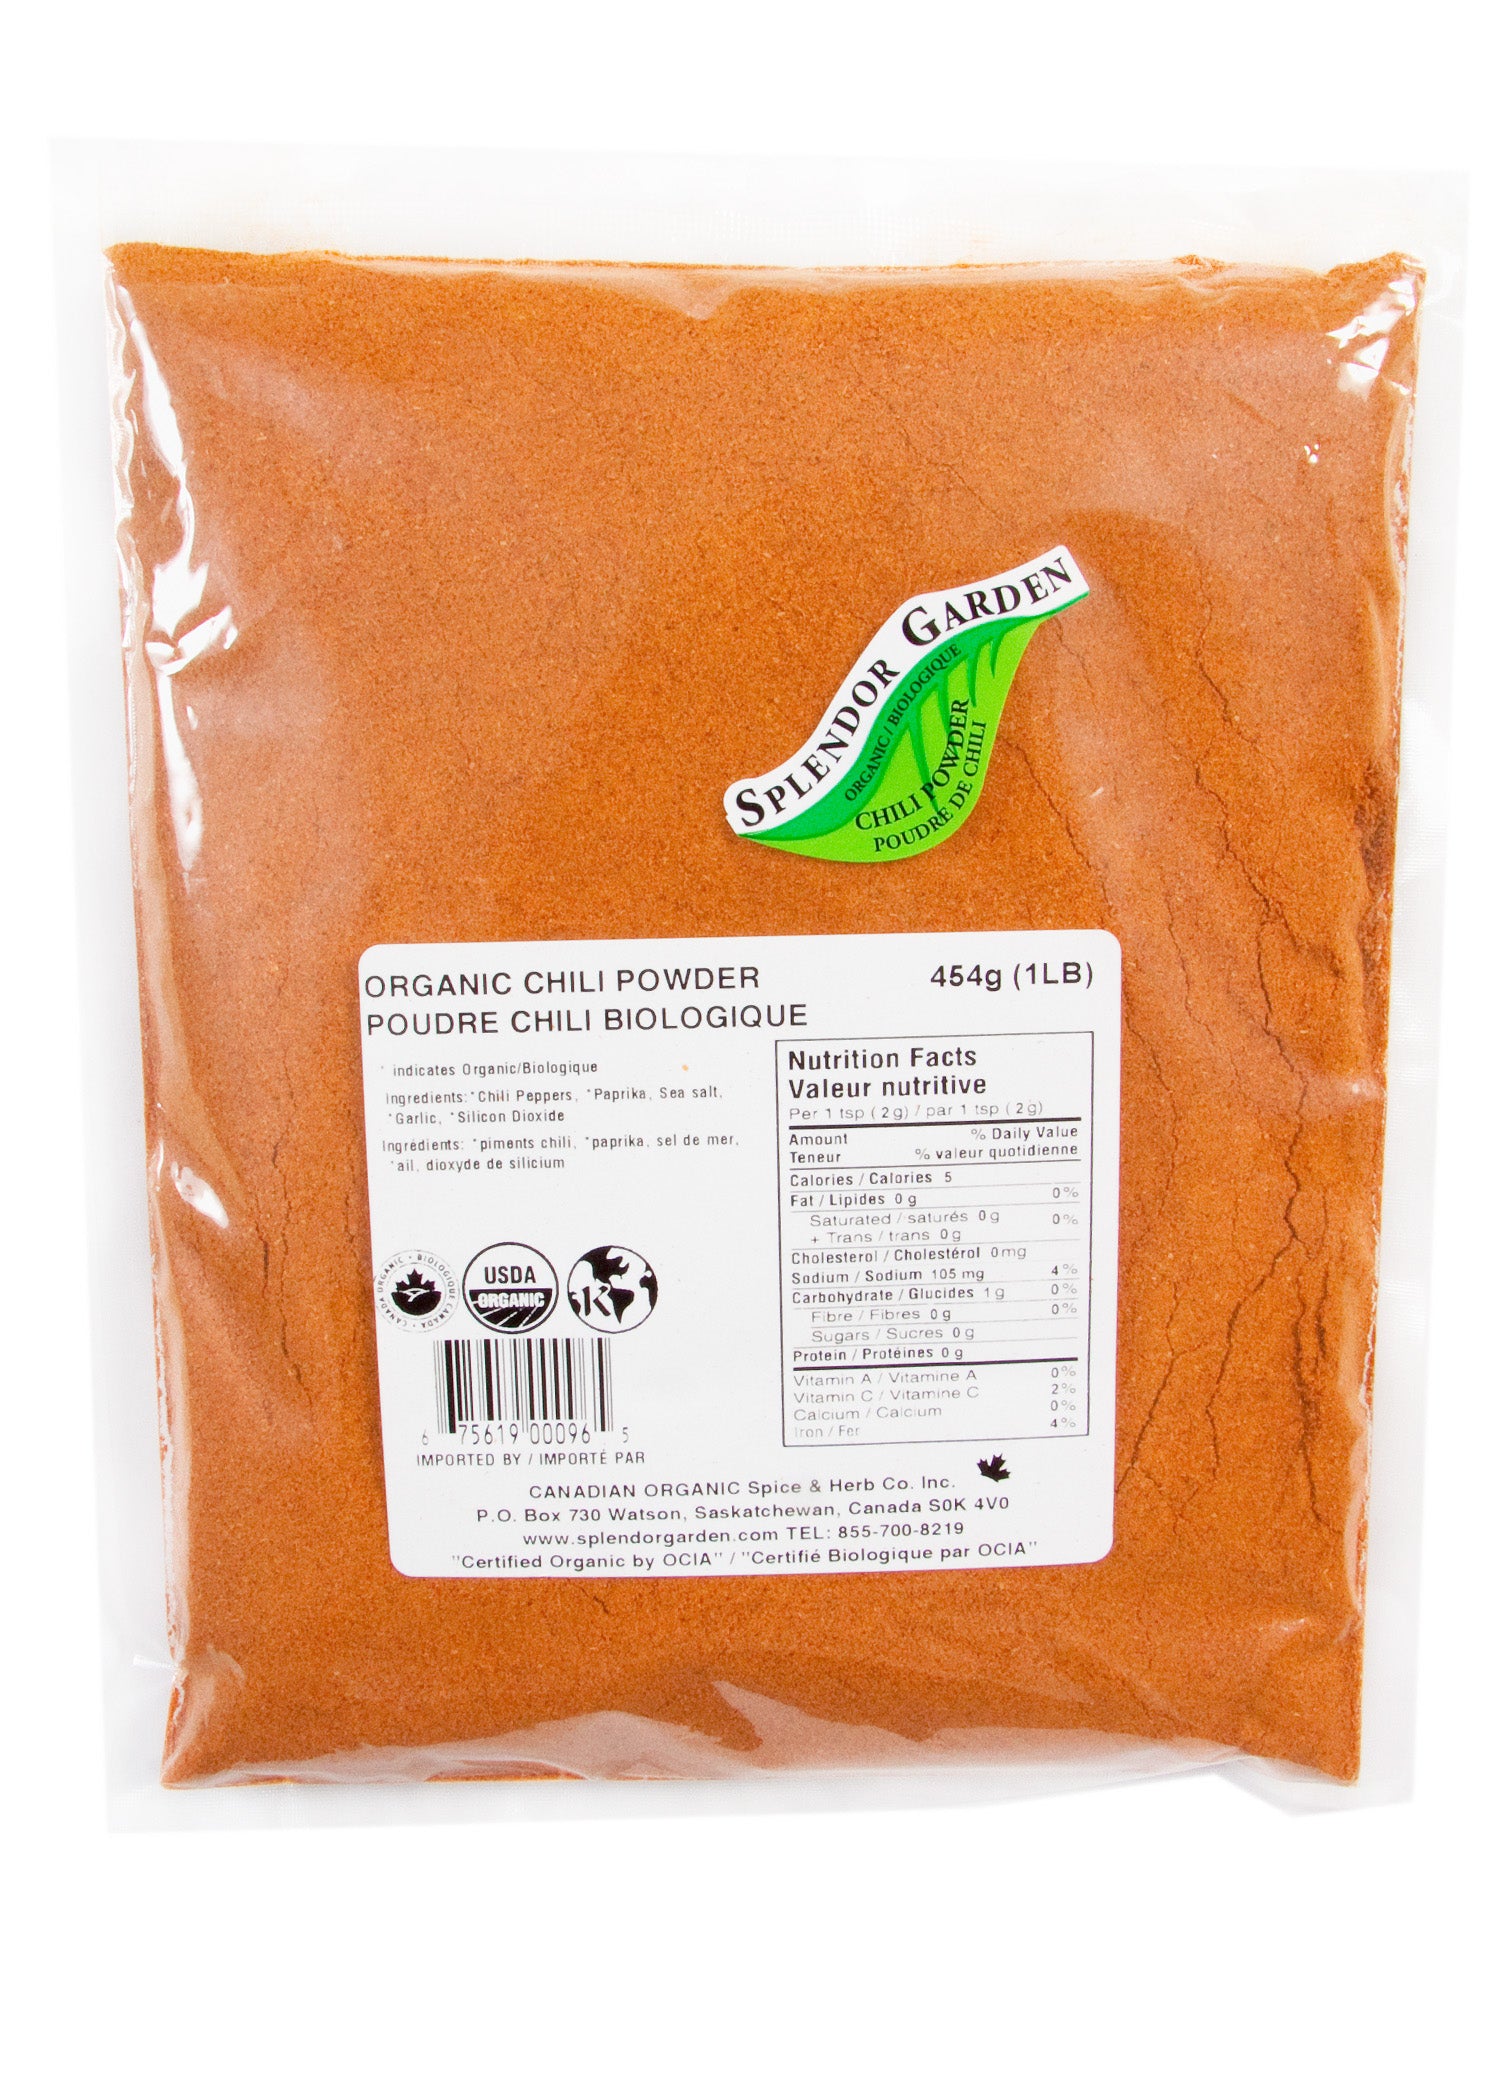 Splendor Garden Organic Chili Powder 454g